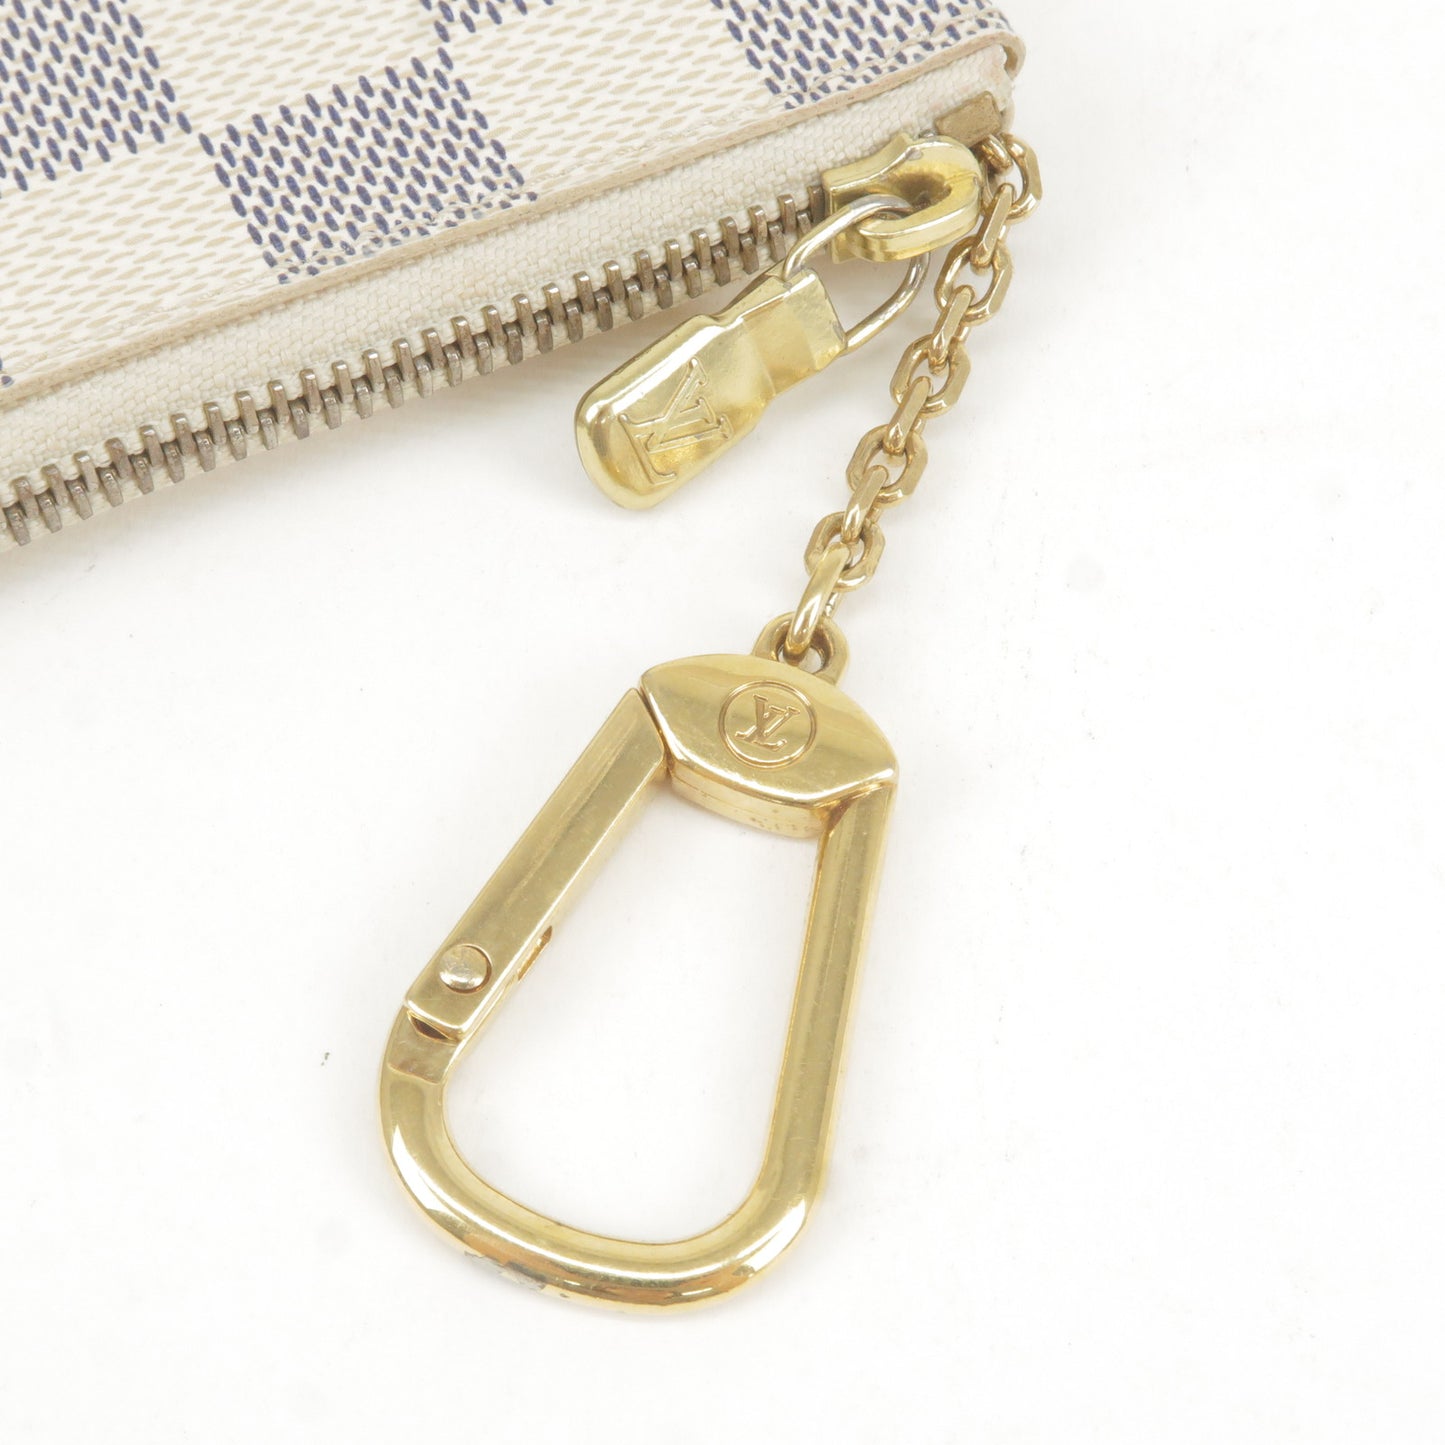 Louis Vuitton Damier Azur Pochette Cles Coin Key Case N62659